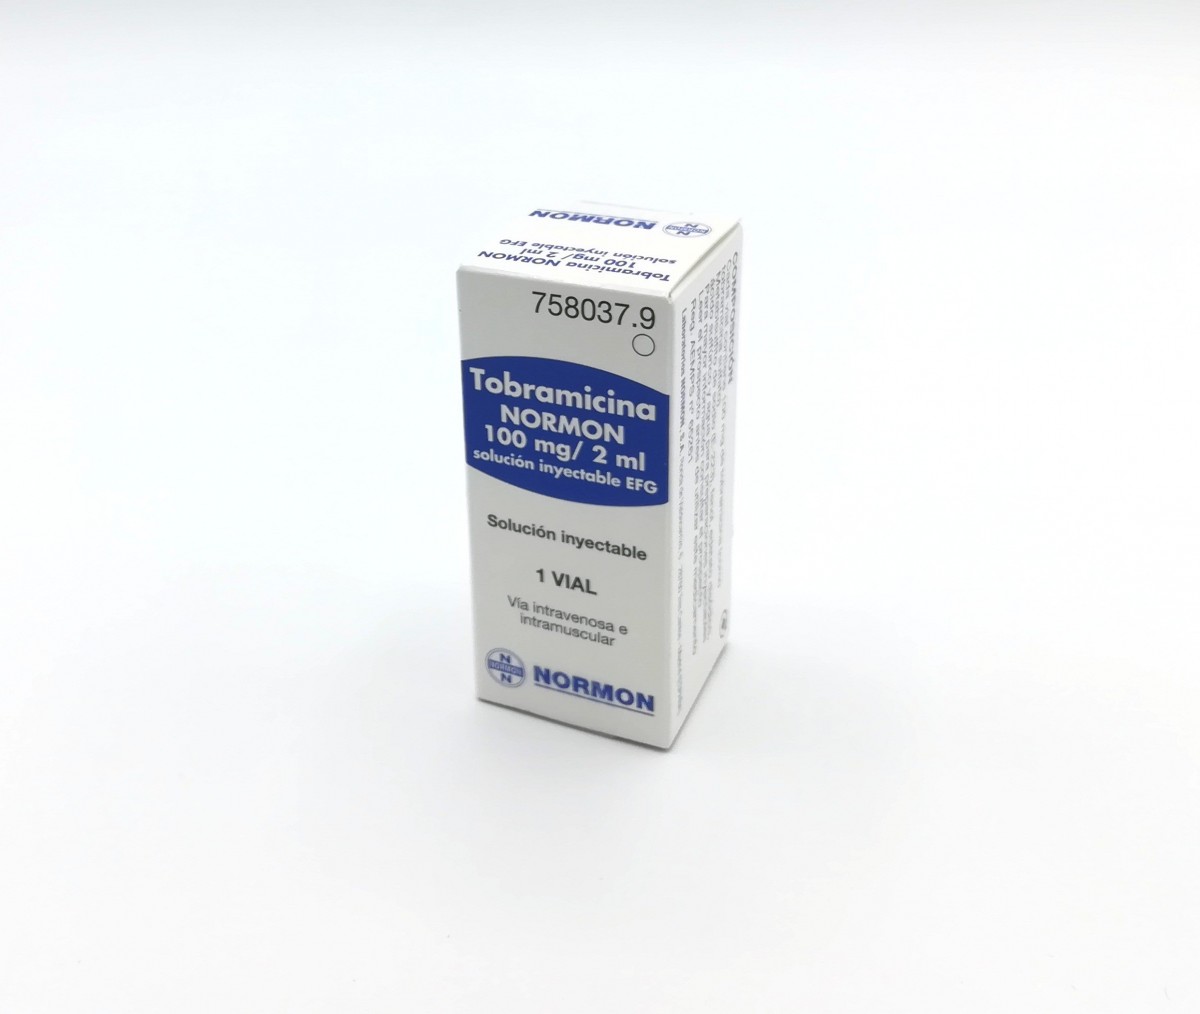 TOBRAMICINA NORMON 100 mg/2 ml SOLUCION INYECTABLE EFG , 100 viales de 2 ml fotografía del envase.